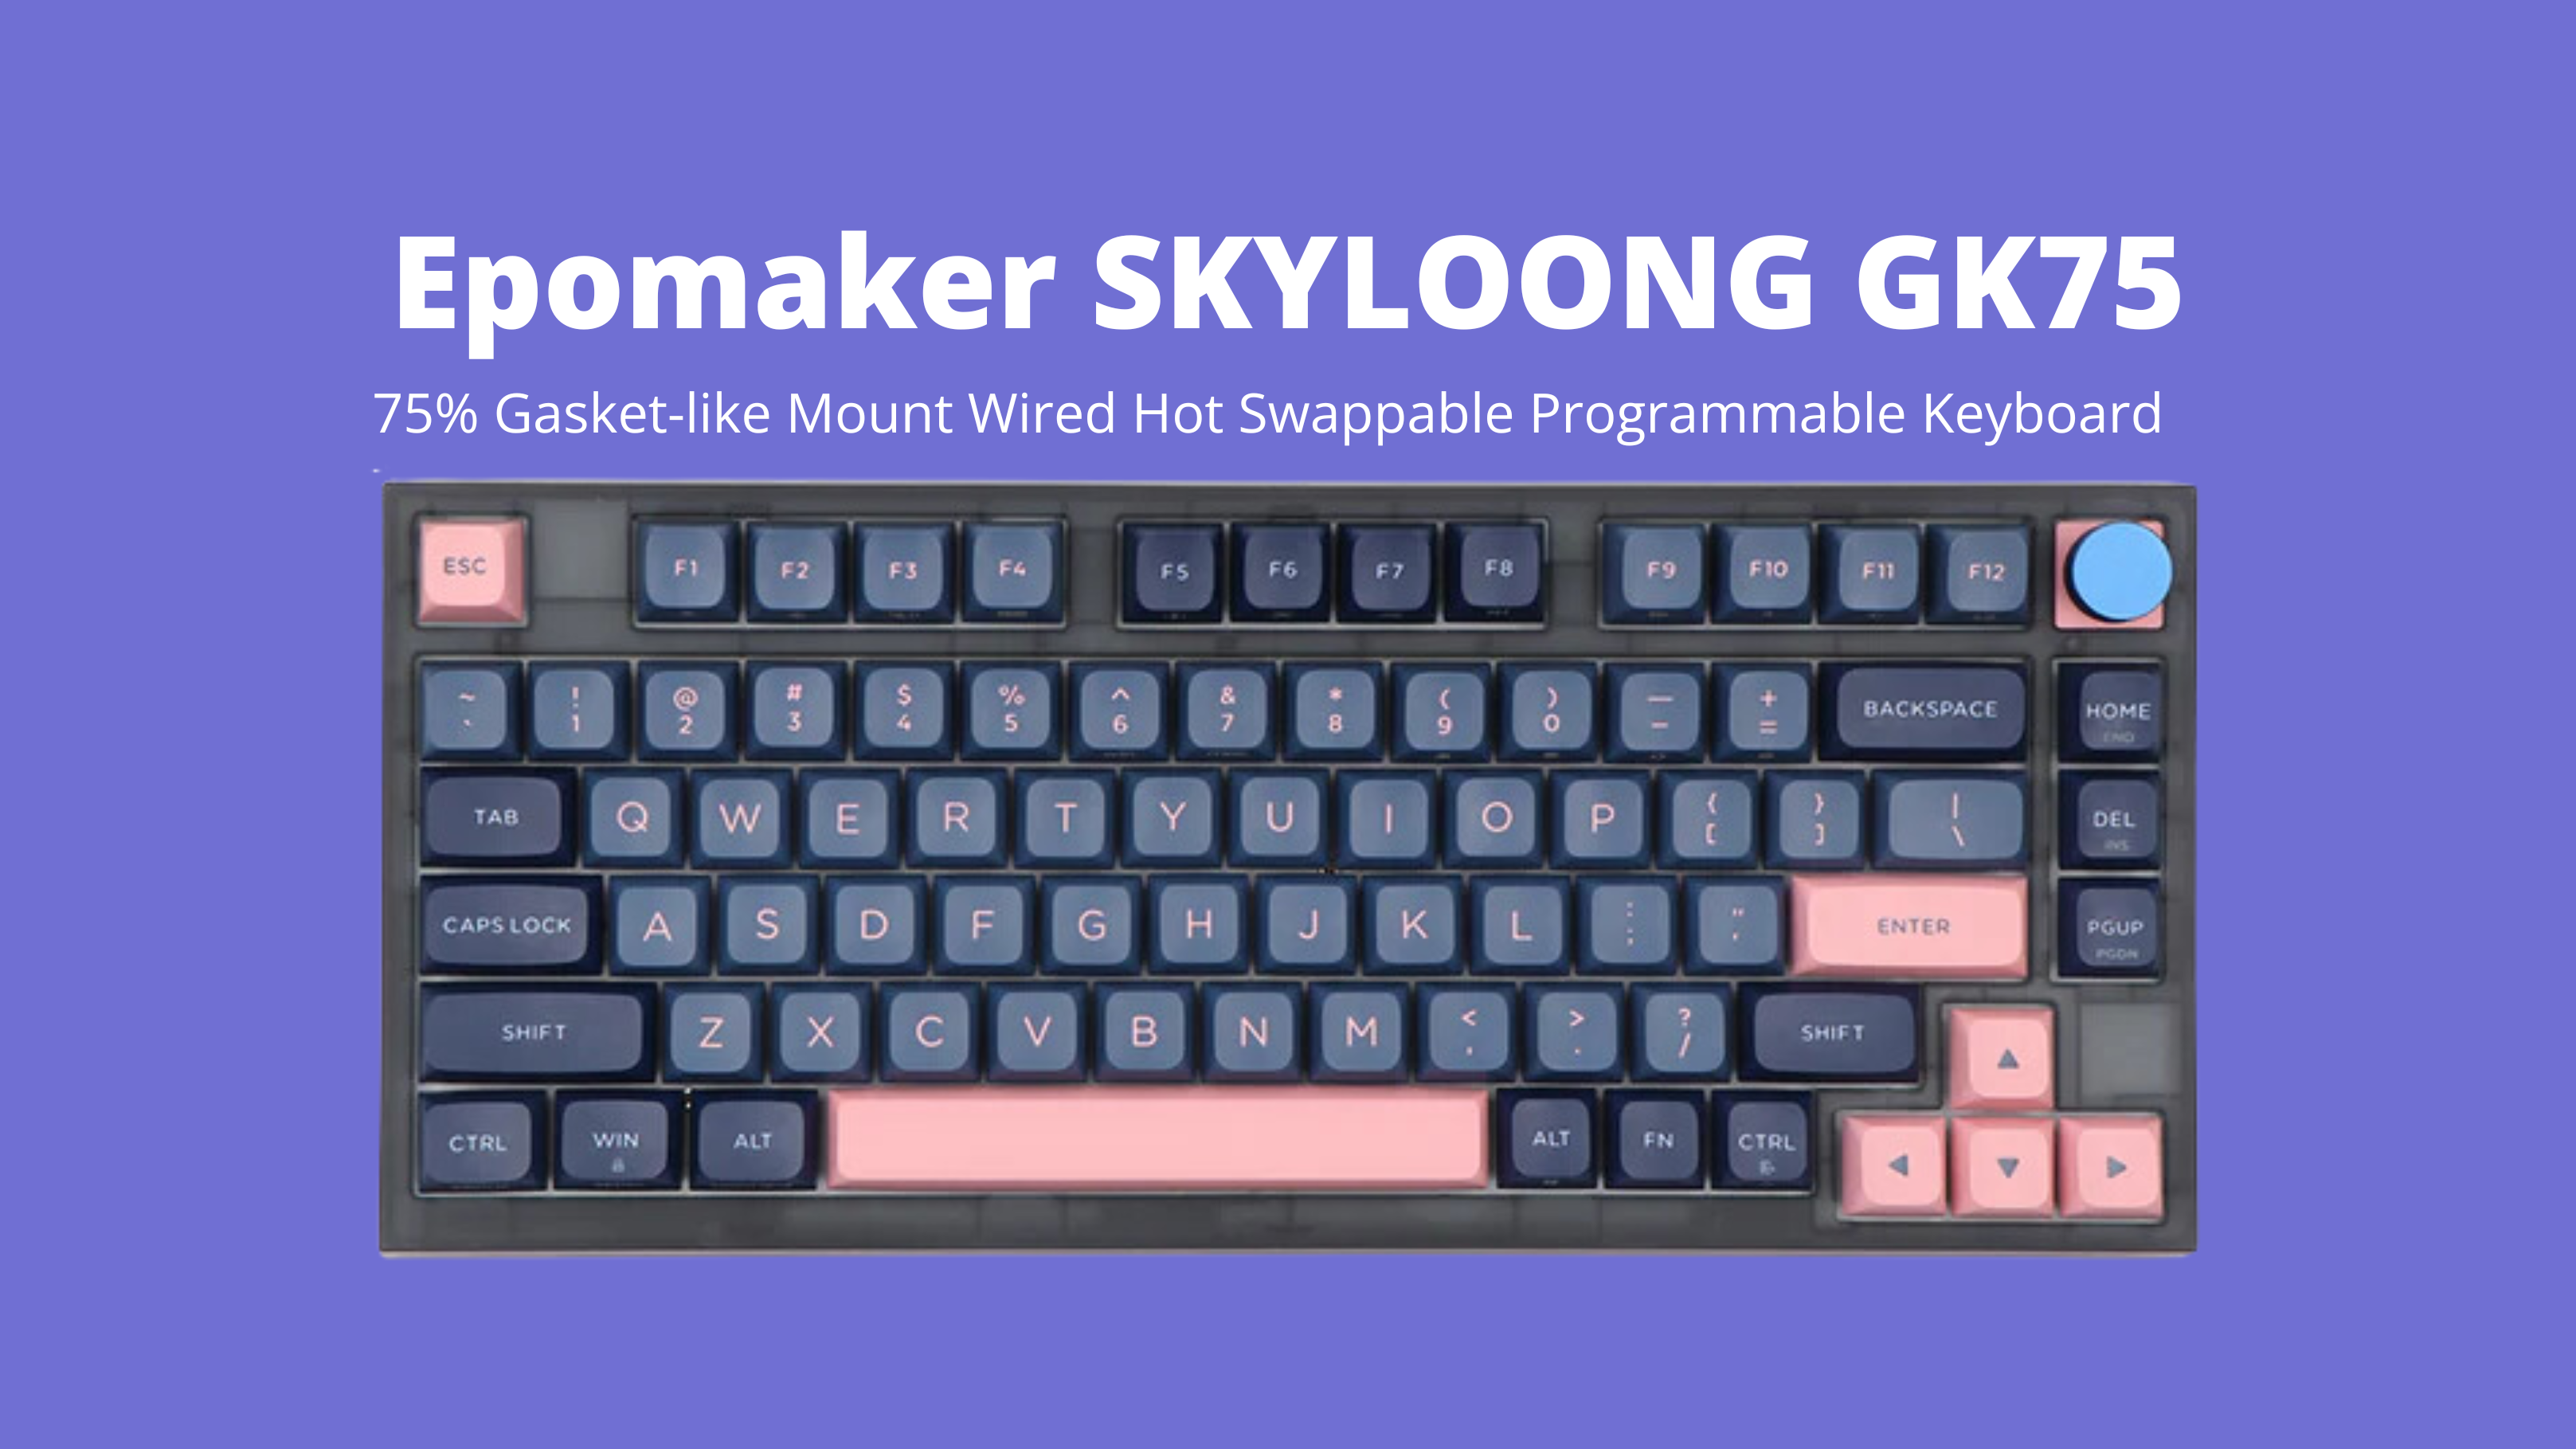 EPOMAKER SKYLOONG GK75 Mechanical Keyboard